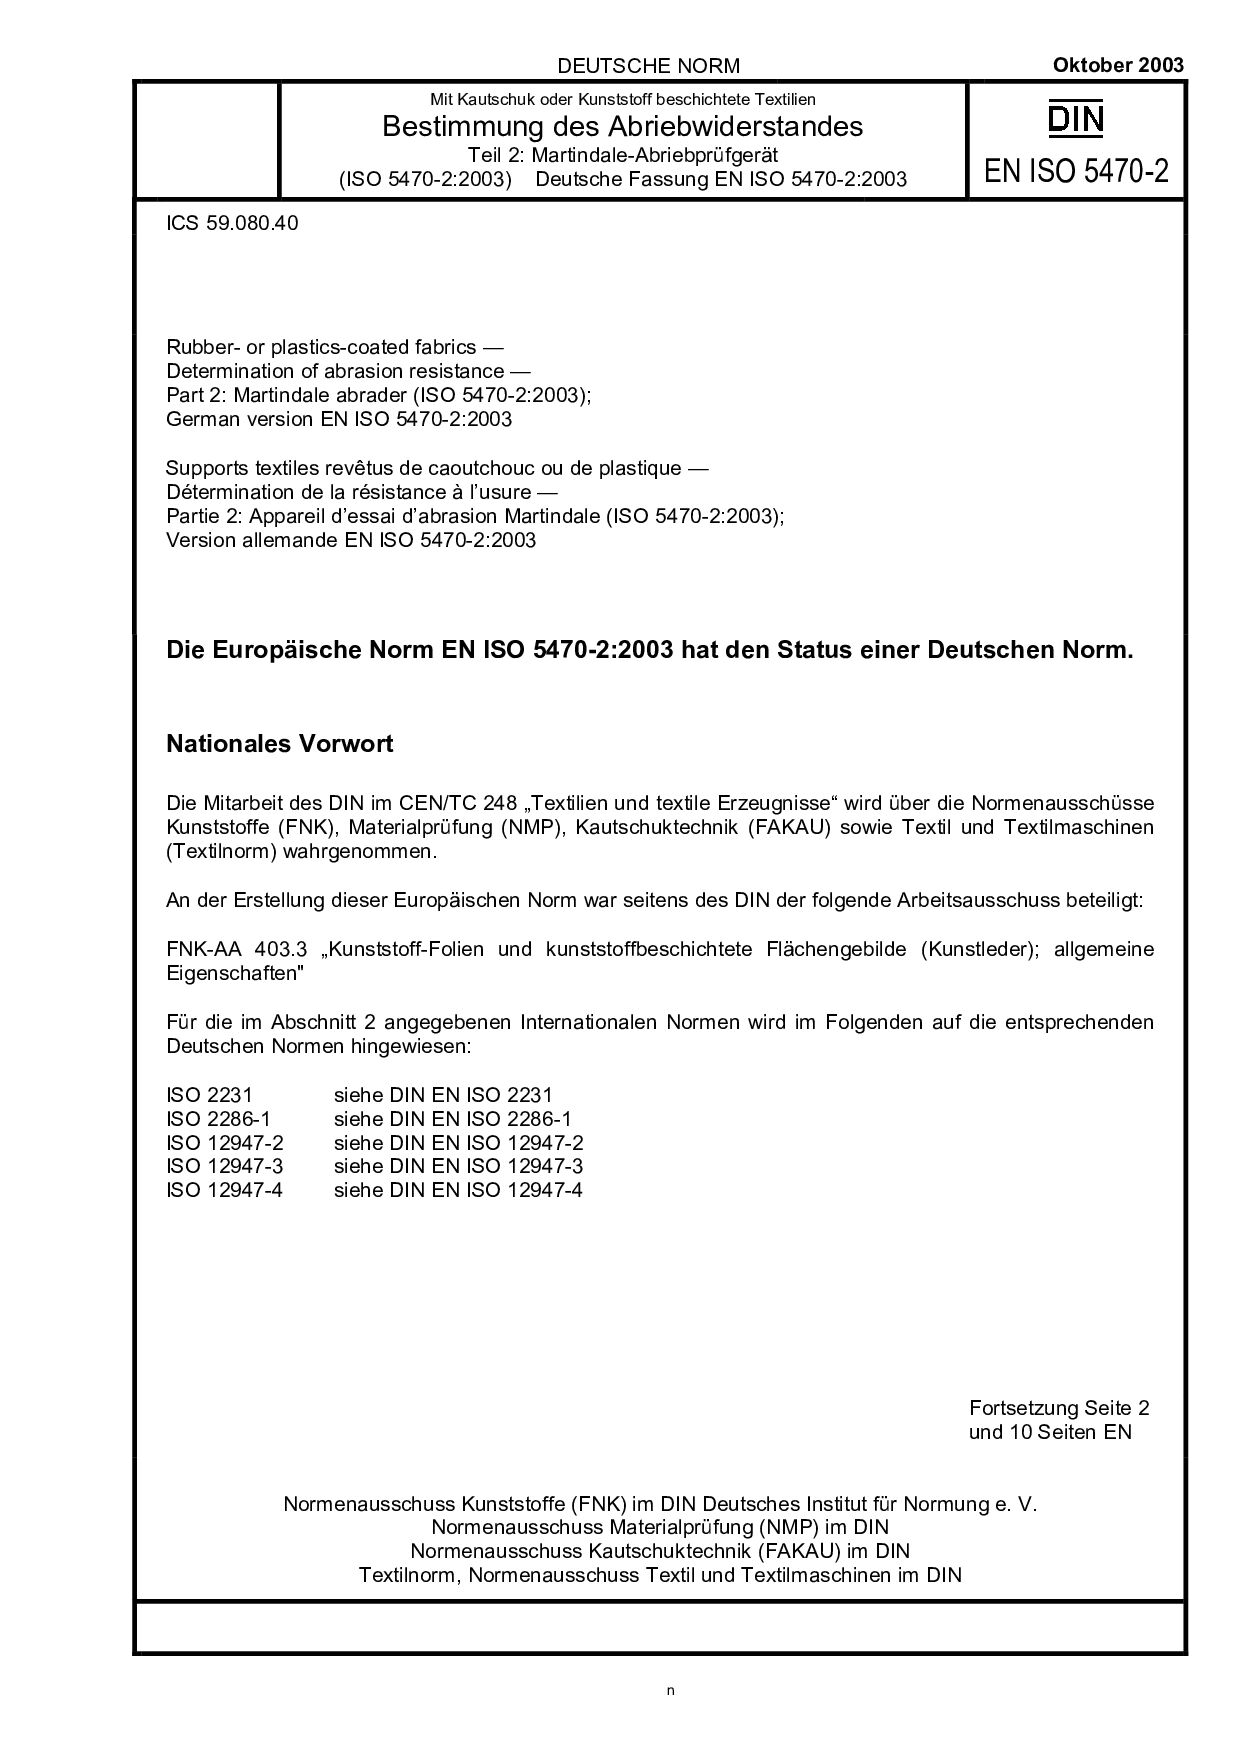 DIN EN ISO 5470-2:2003